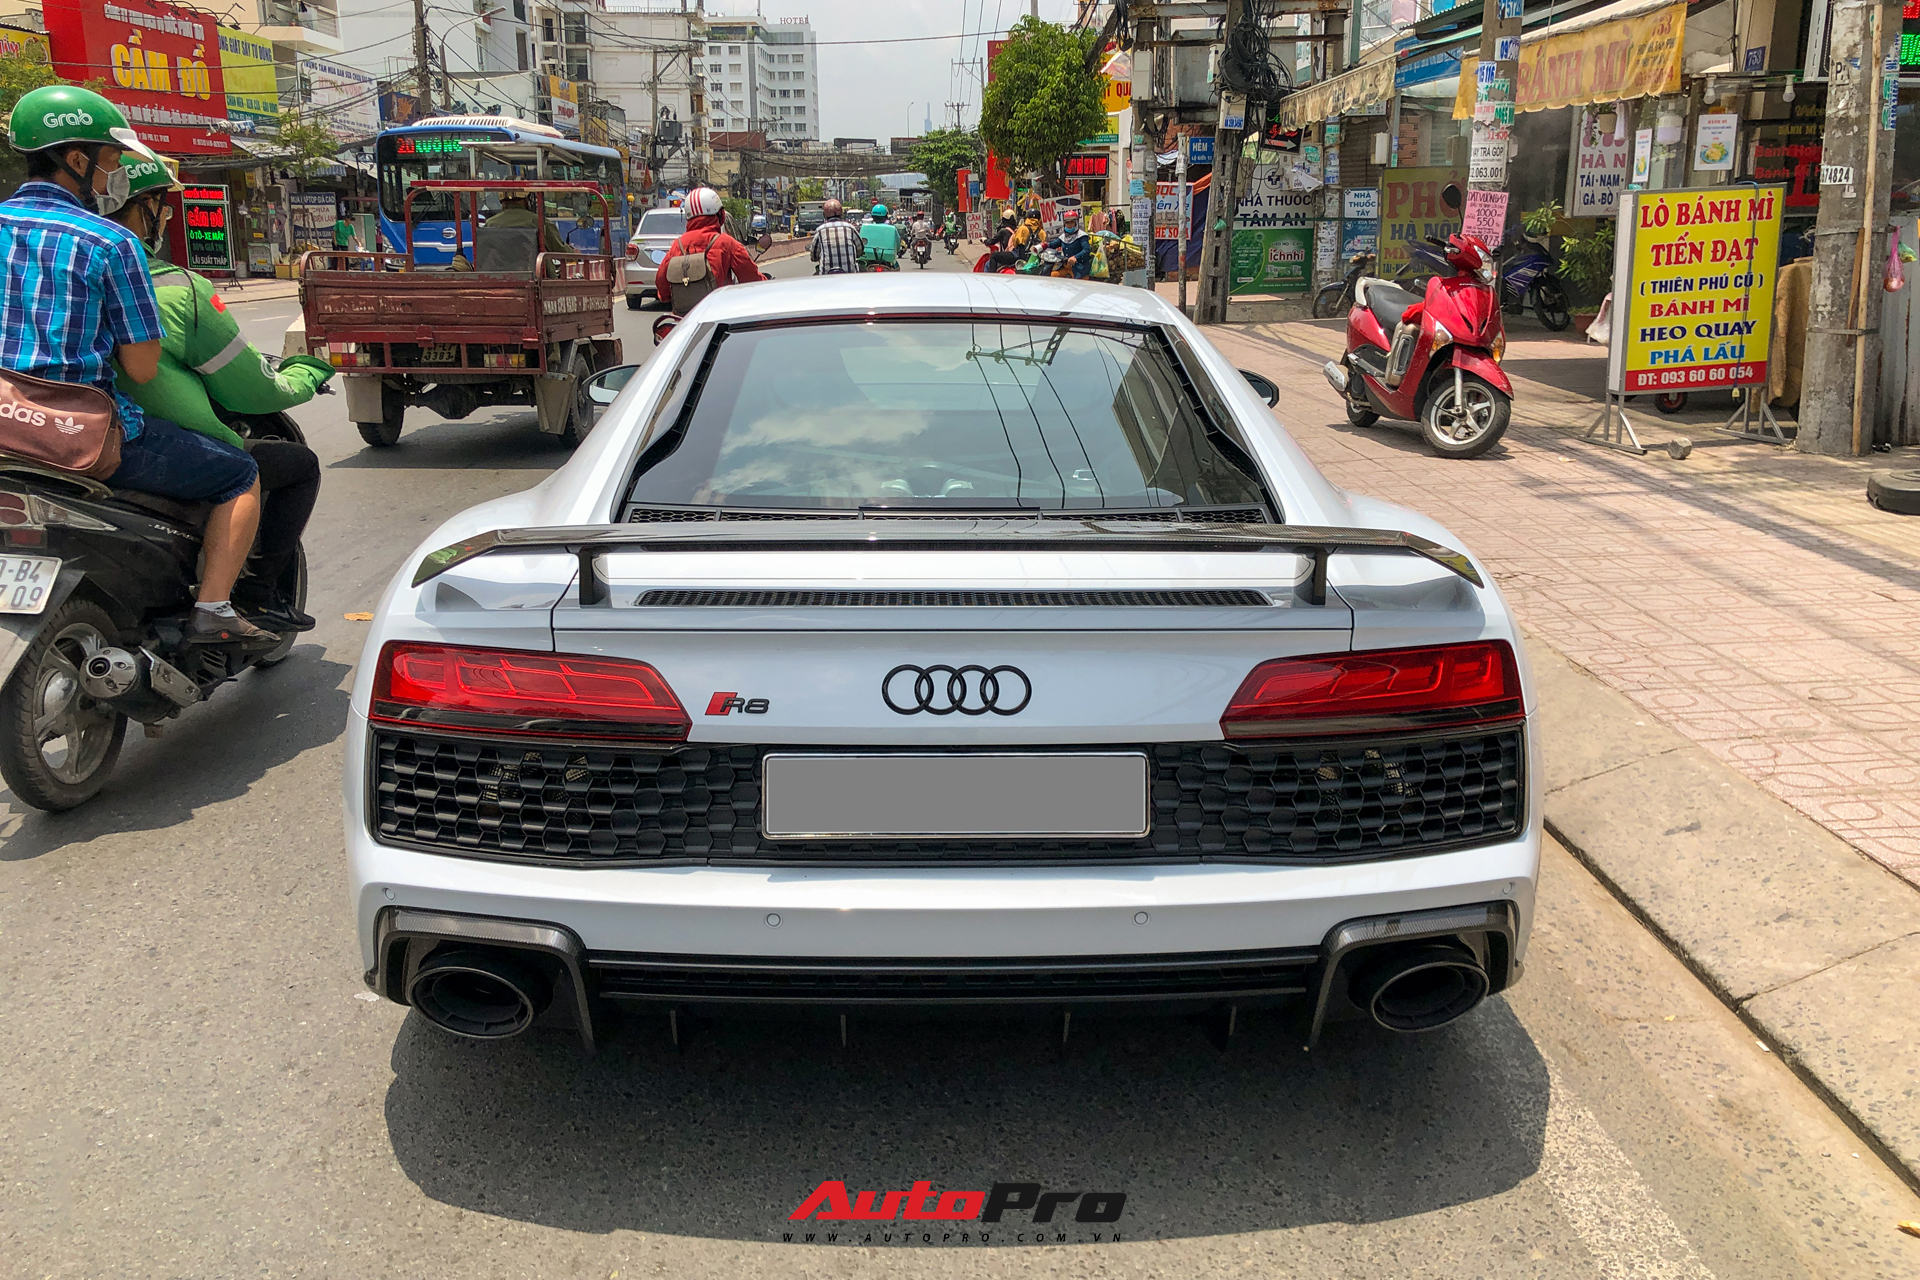 Audi R8 V10 Performance 2021 đầu tiên về Việt Nam lộ diện trên phố với một chi tiết khẳng định đã có chủ - Ảnh 7.